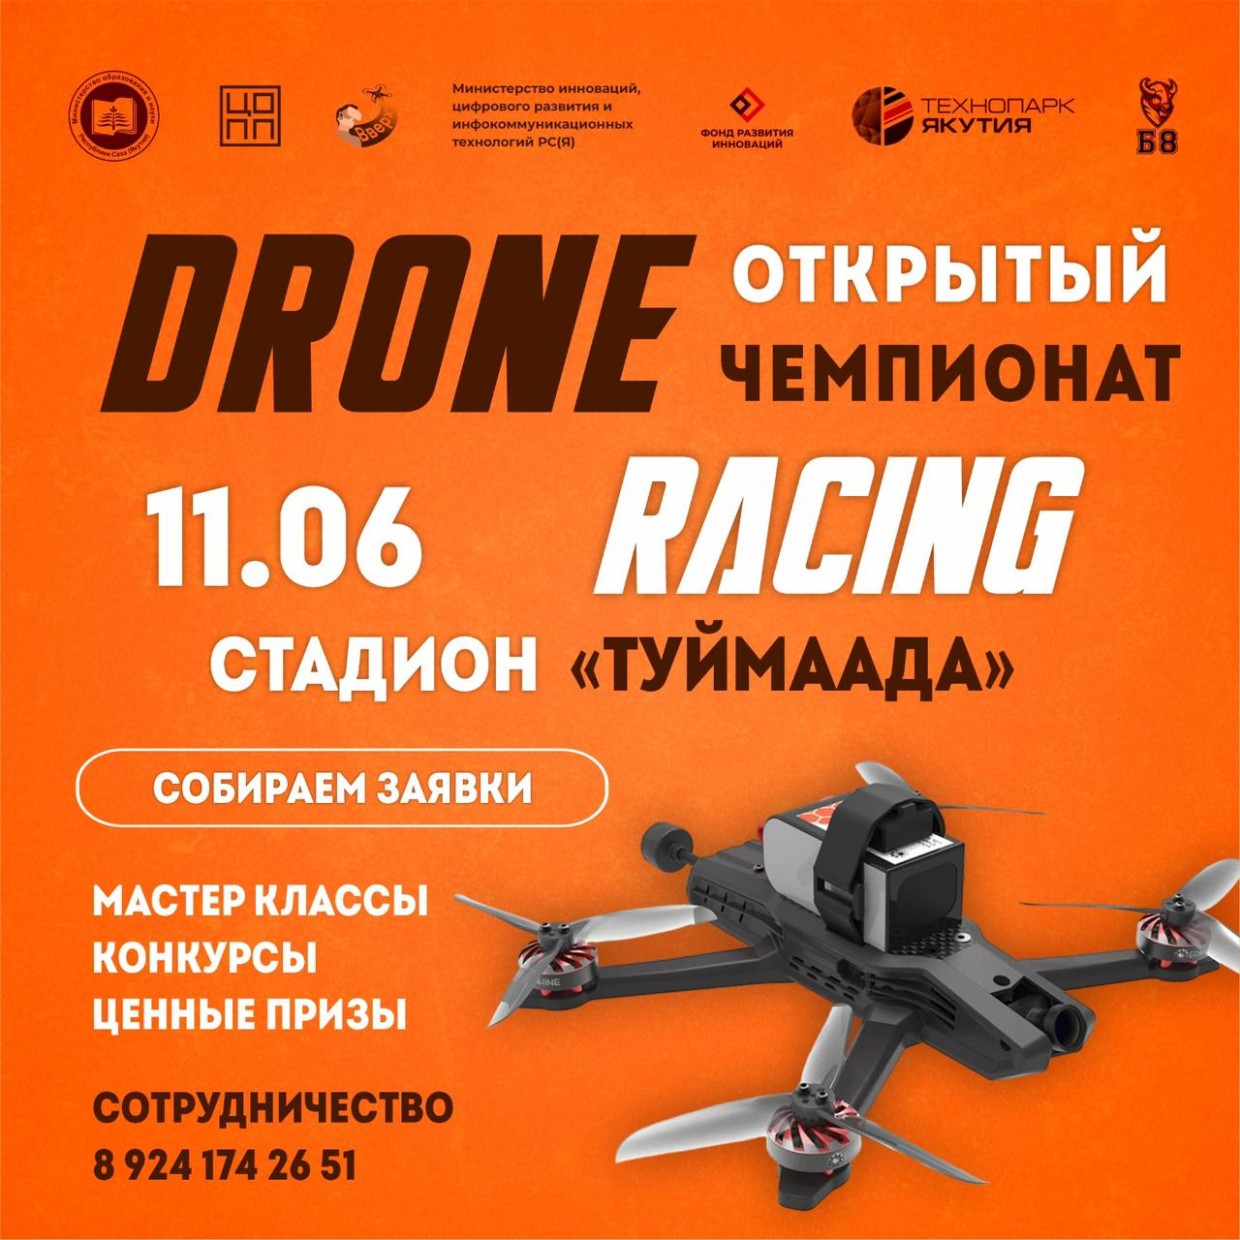 Впервые в Якутске пройдет открытый чемпионат по дрон-рейсингу